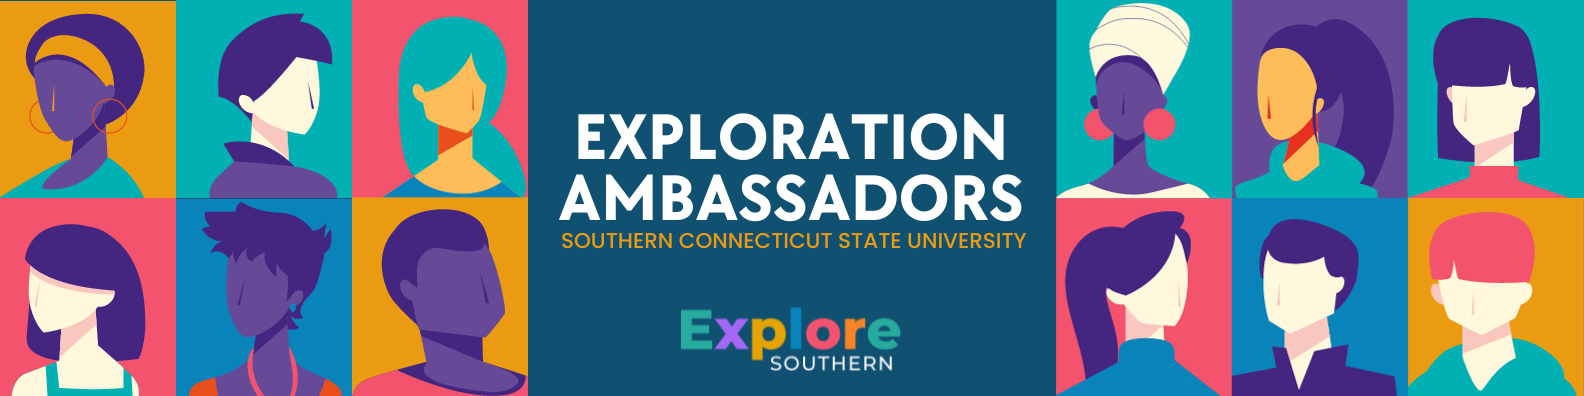 exploration ambassadors